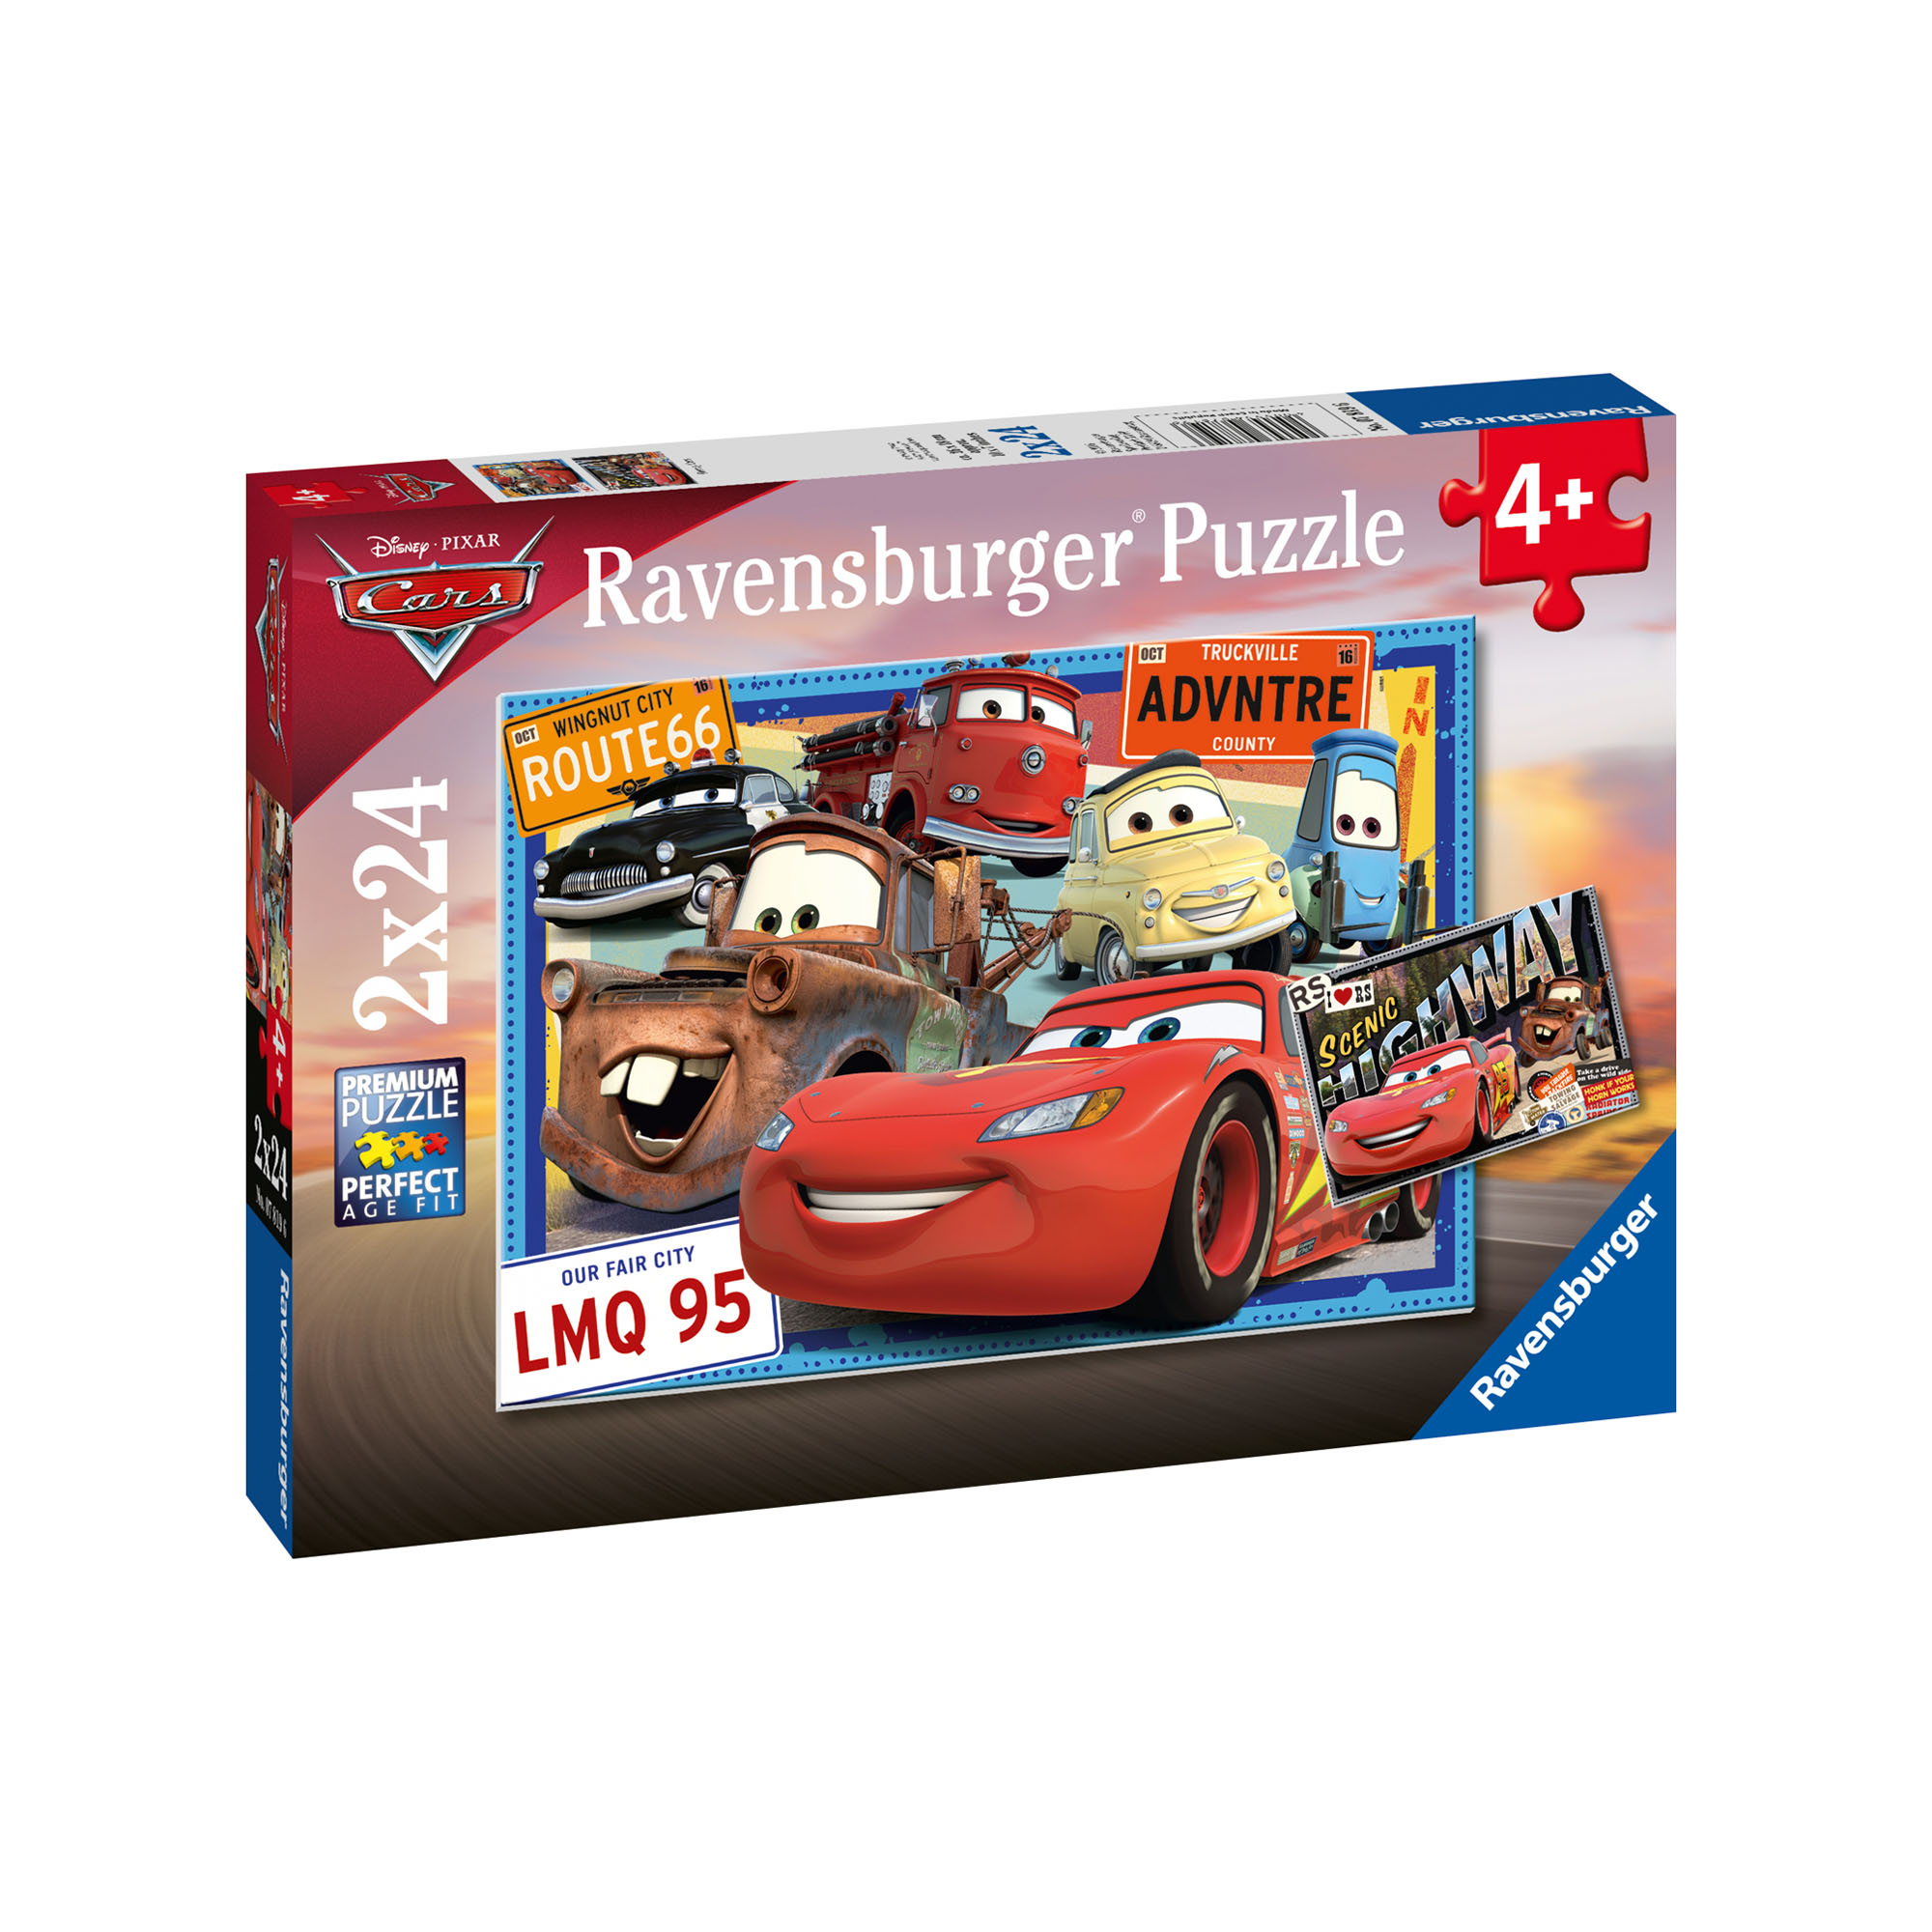 Ravensburger Puzzle 2x24 pezzi 07819 - Cars, , large